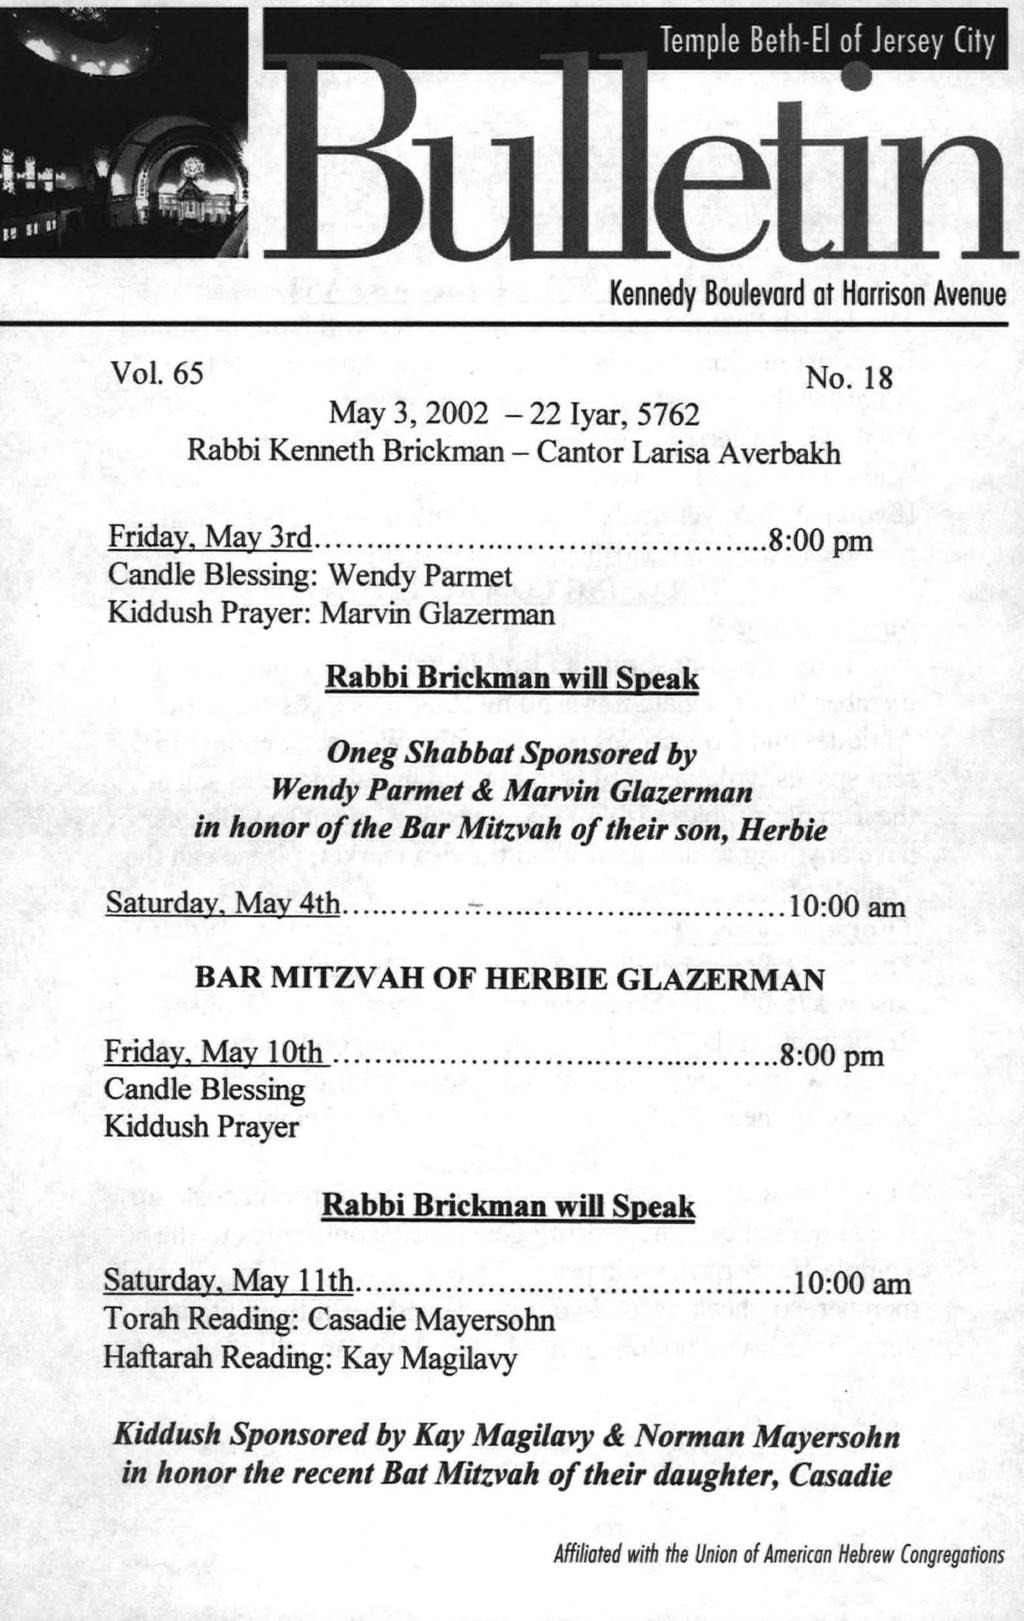 Kennedy Boulevard ot Horrison Avenue Vol. 65 No. 18 May 3, 2002-22 Iyar, 5762 Rabbi Kenneth Brickman - Cantor Larisa A verbakh Friday, May 3rd.